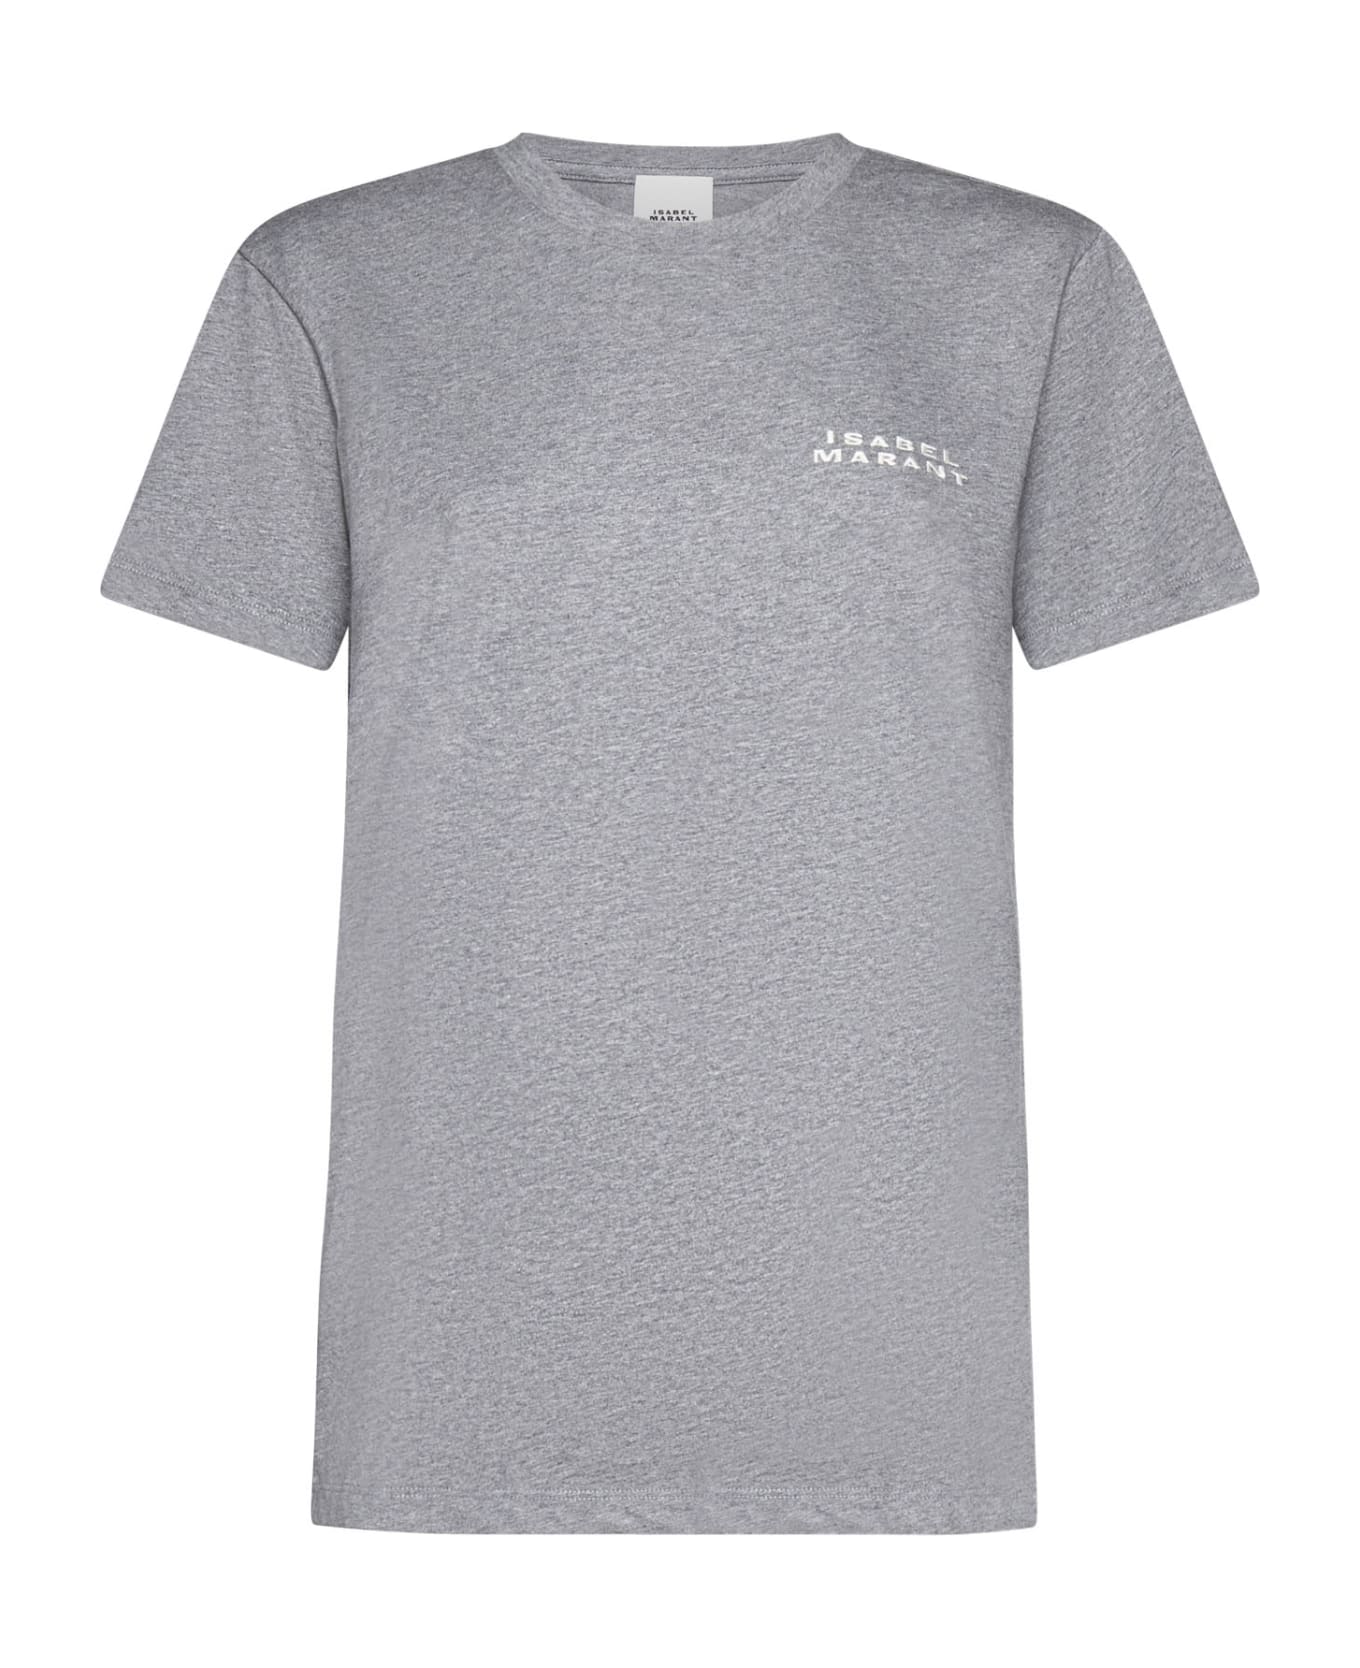 Isabel Marant T-shirt - Grey Tシャツ